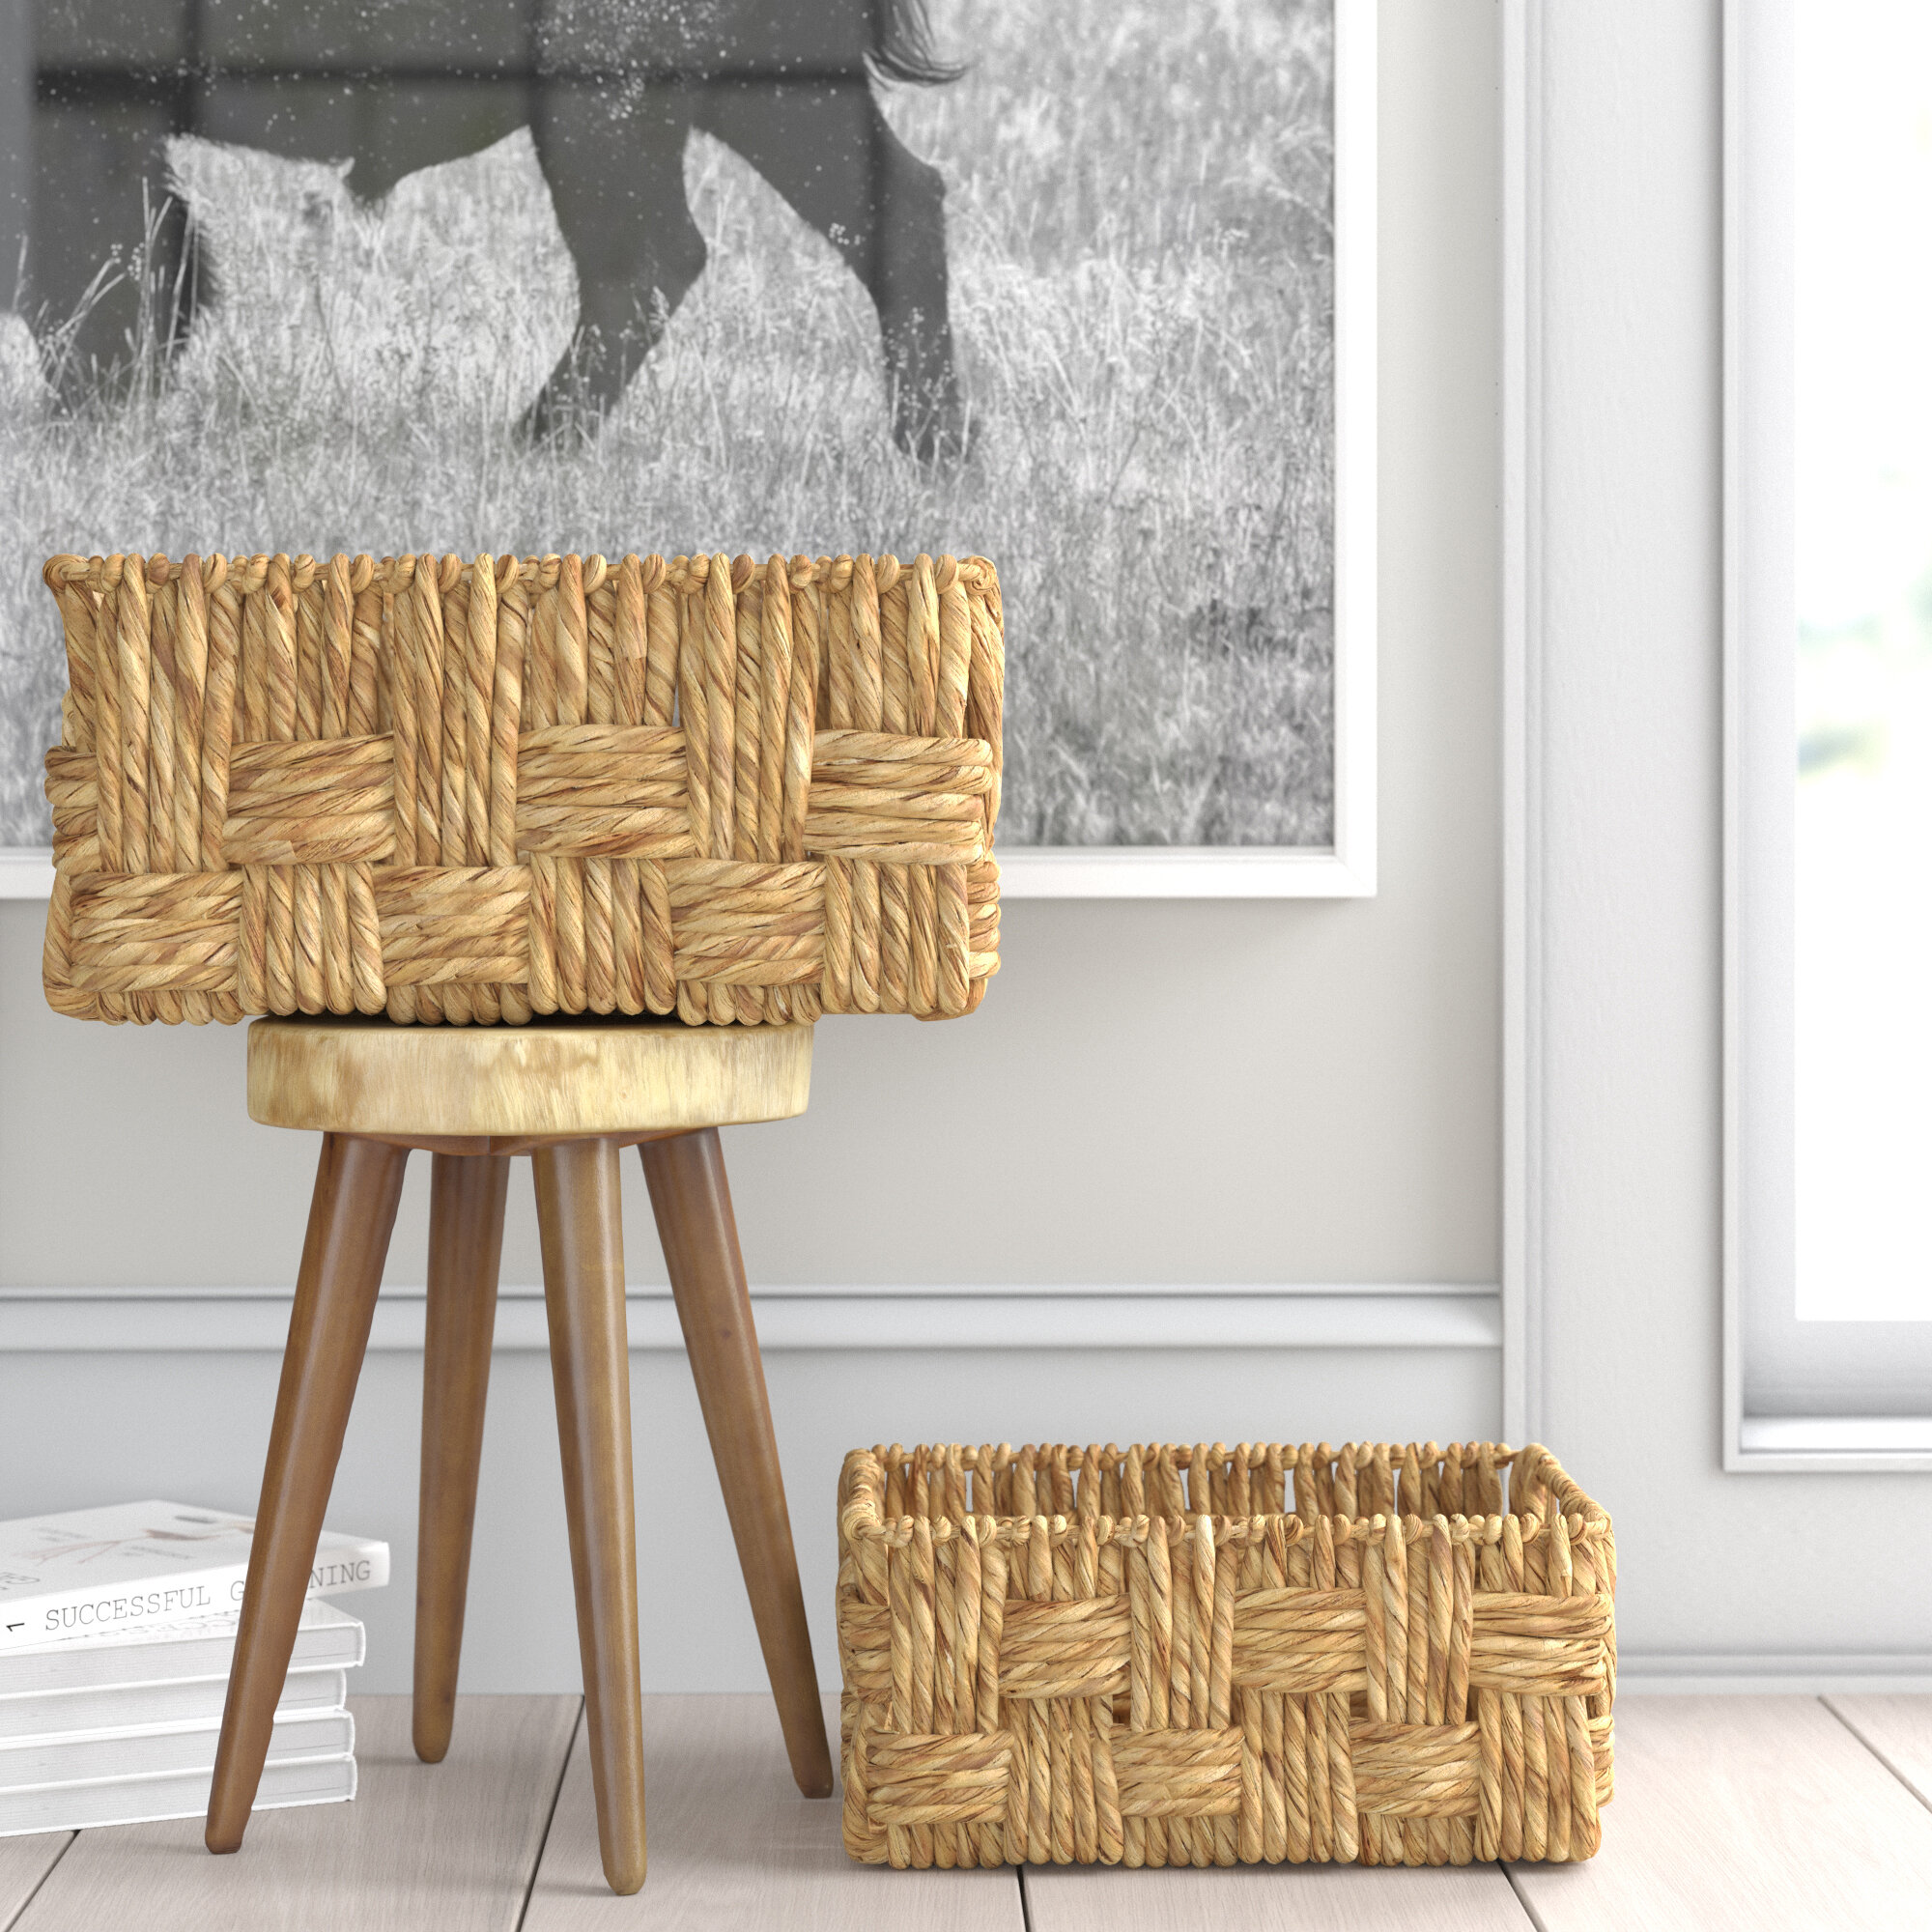 Handmade custom wooden basket with handle – Steel Roots Market